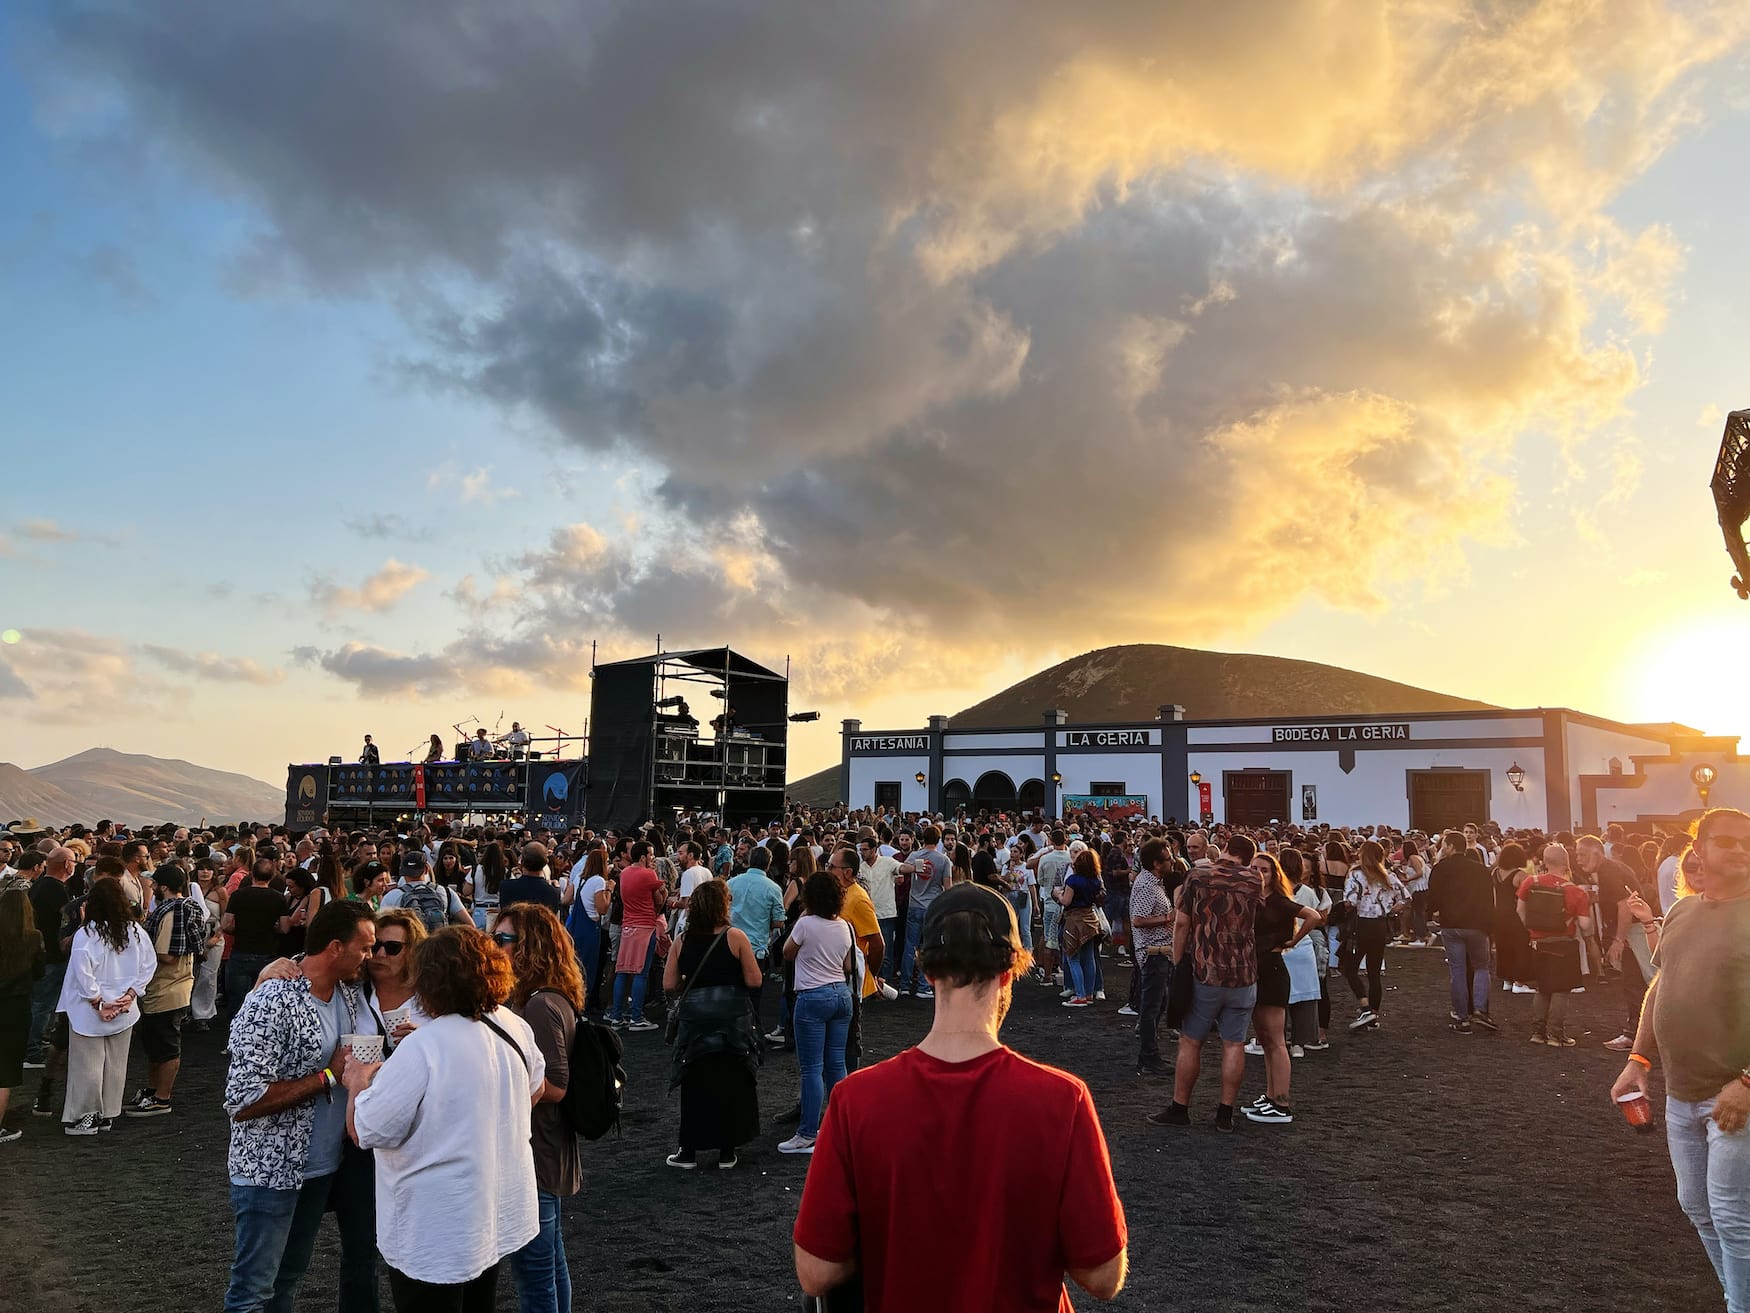 Festival Sonidos Liquidos auf Lanzarote